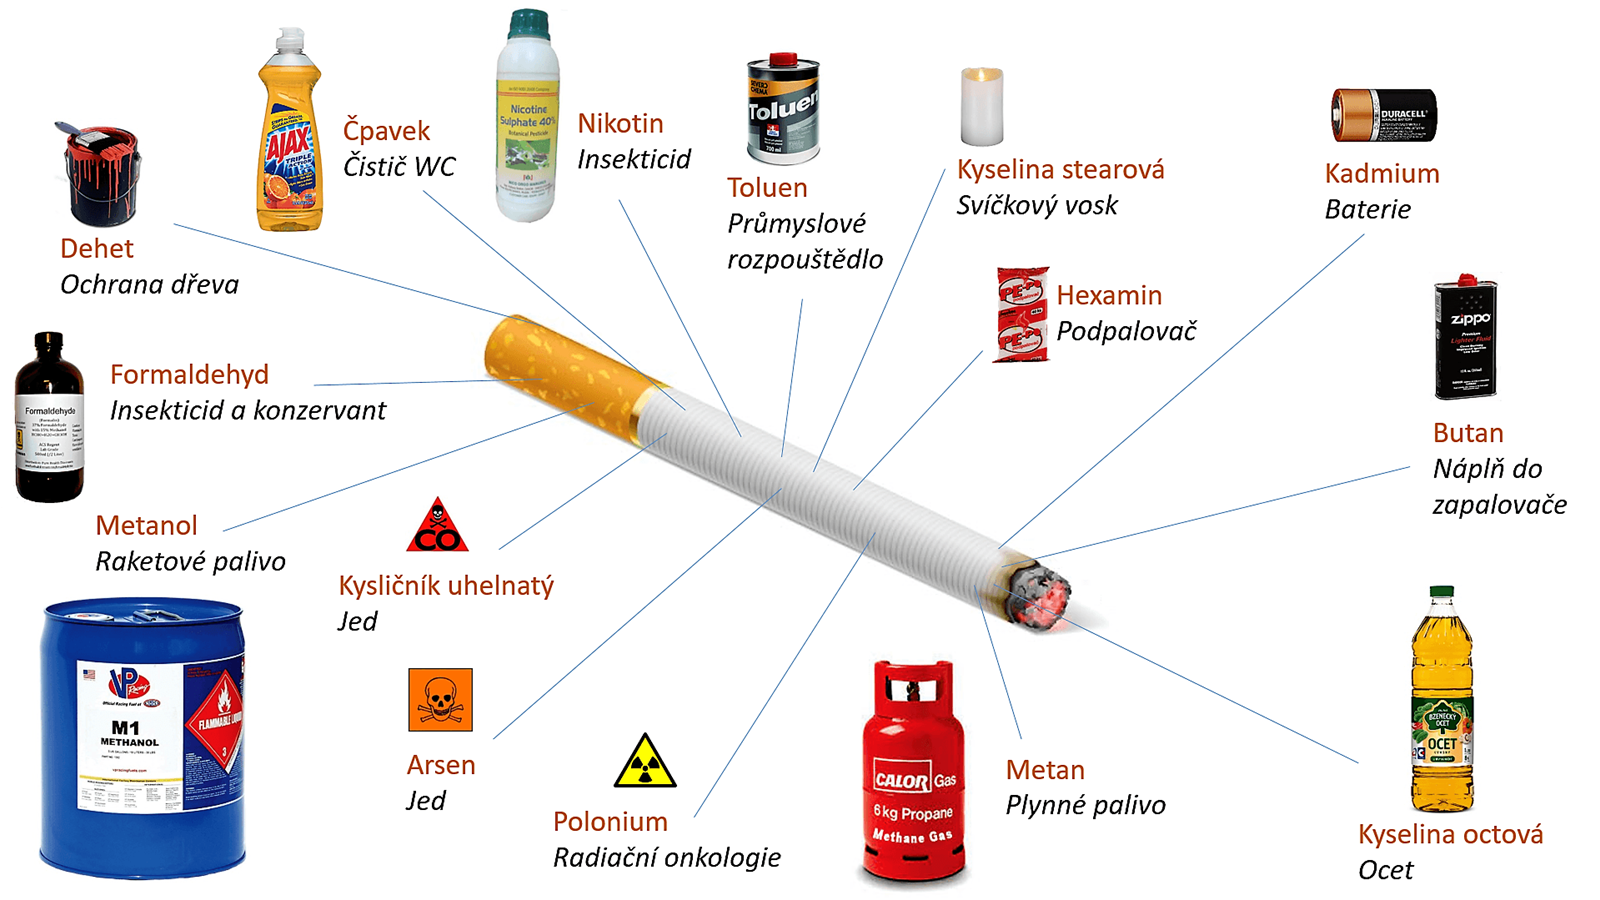 Tăng cường công tác phòng chống tác hại thuốc lá 